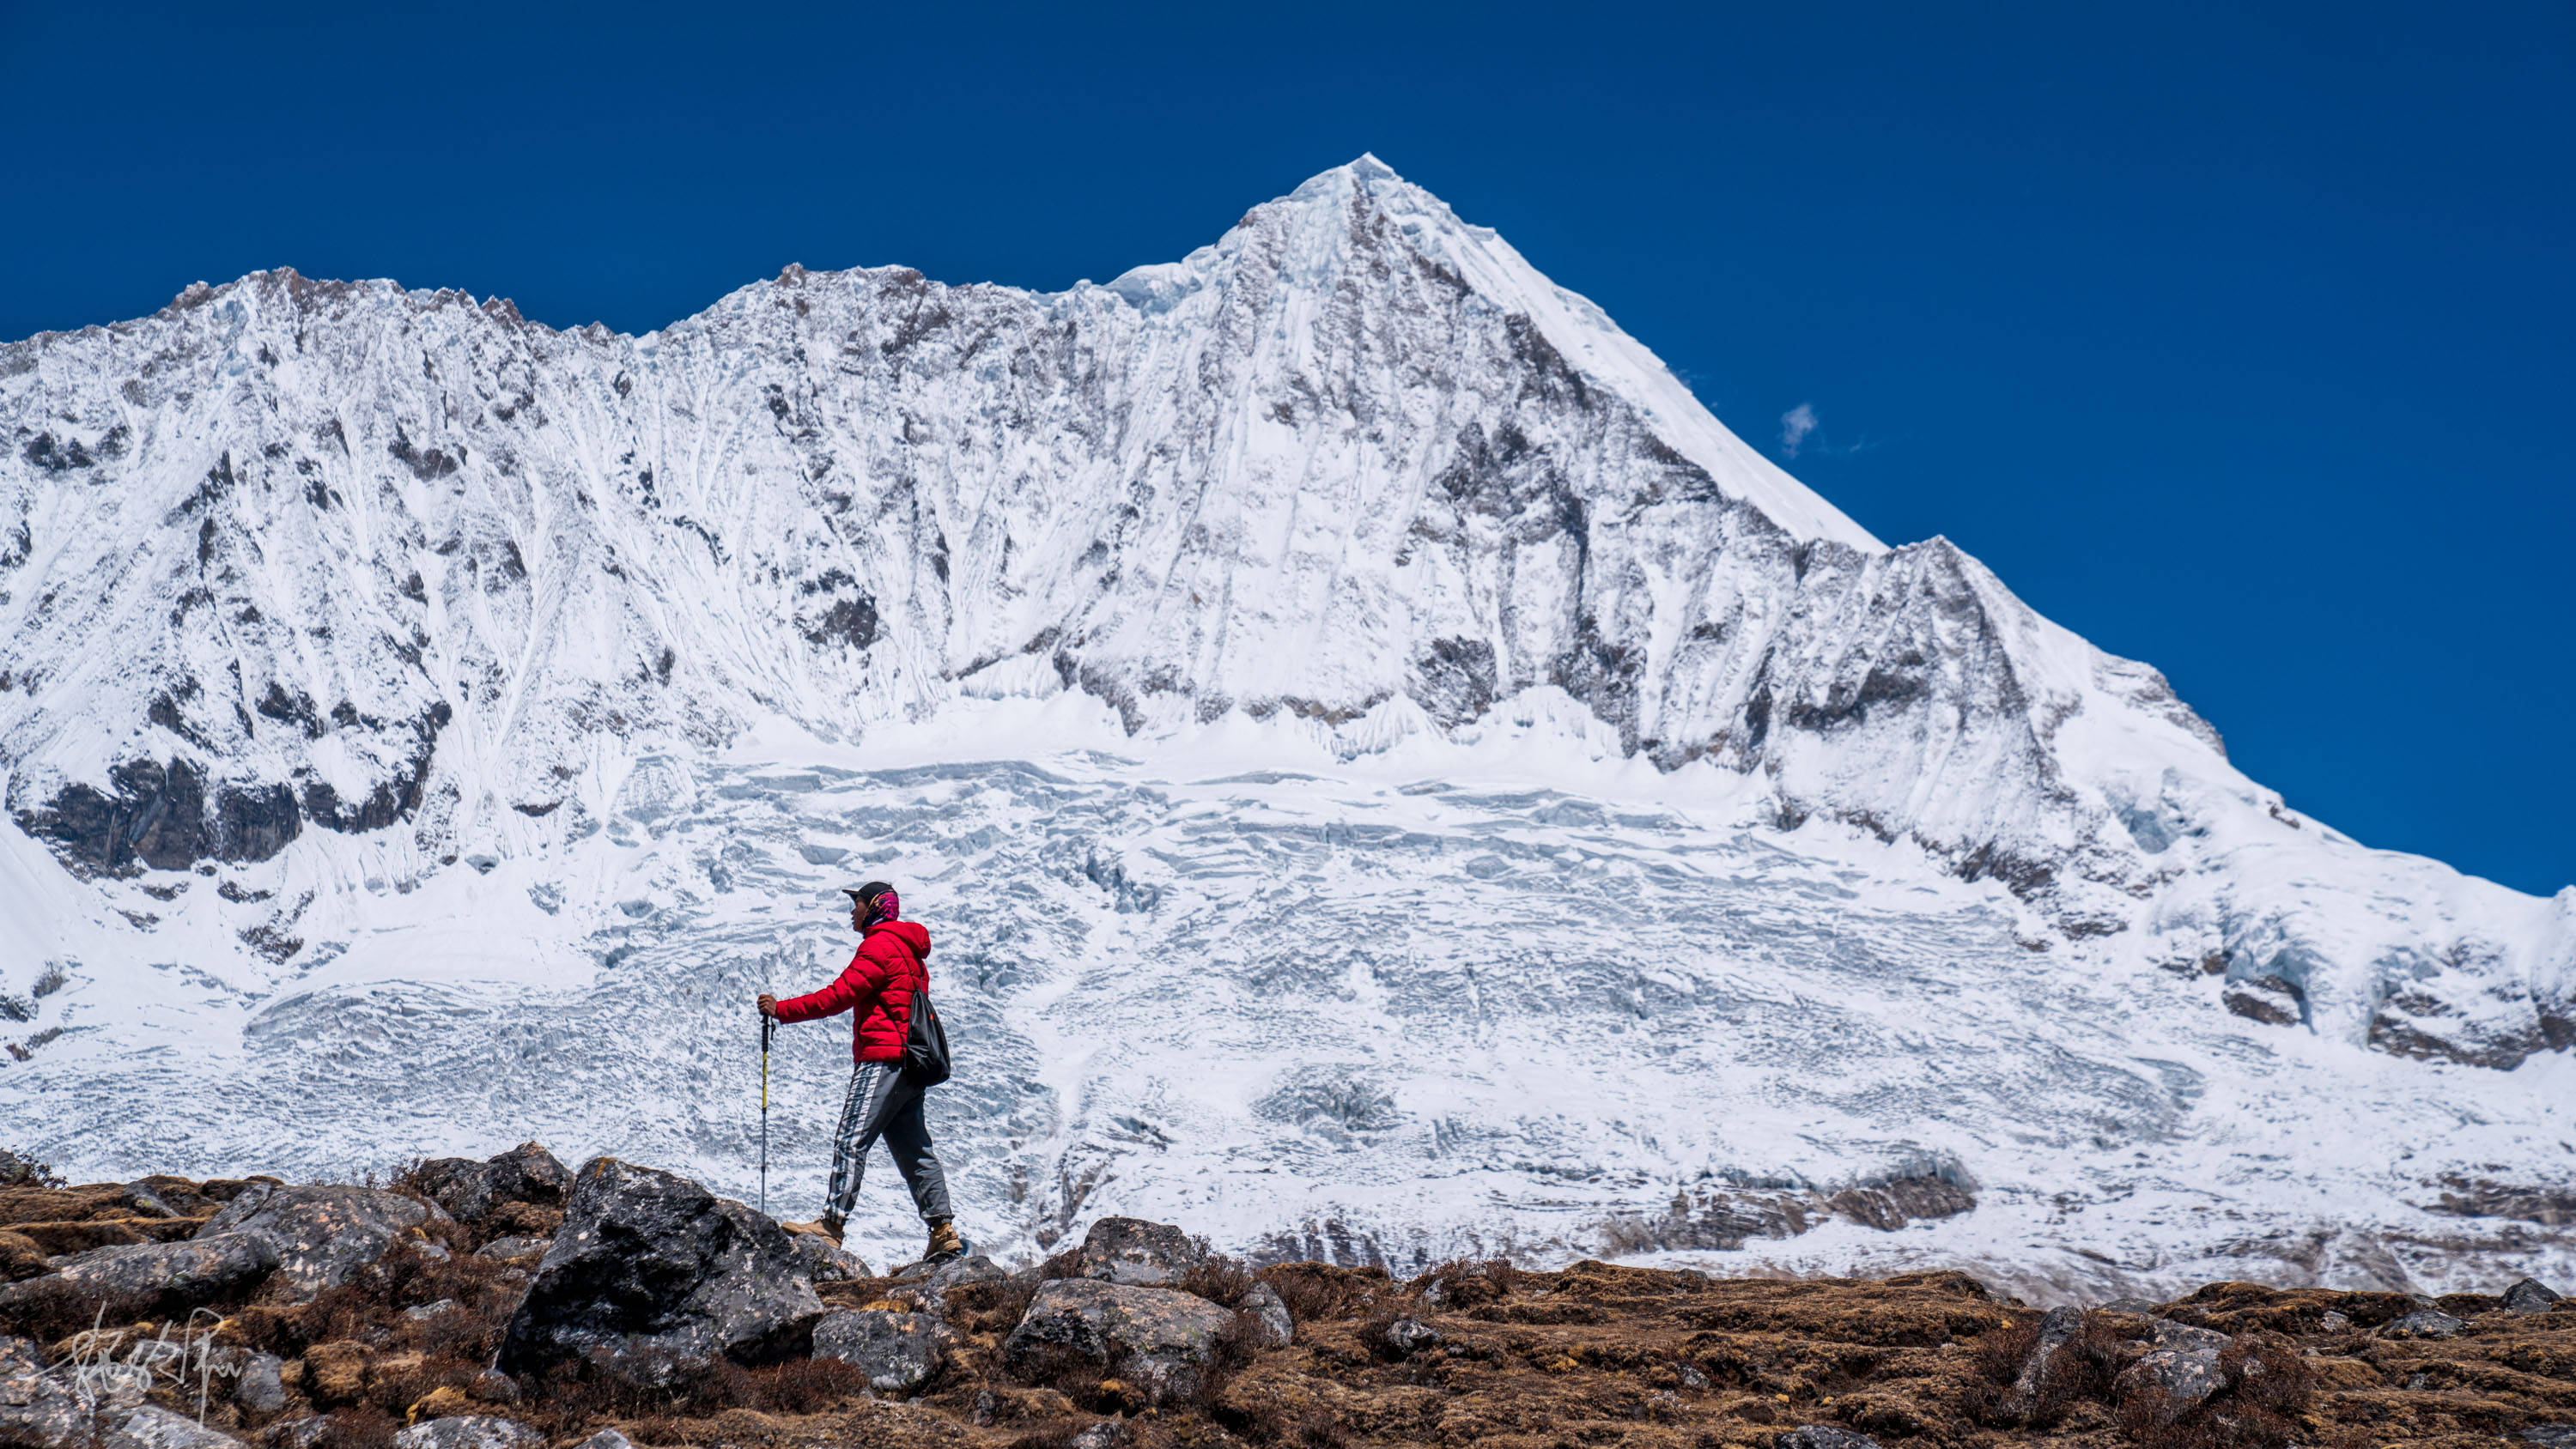 西藏白马林措,入门级的徒步路线,却是亲近雪山的好选择